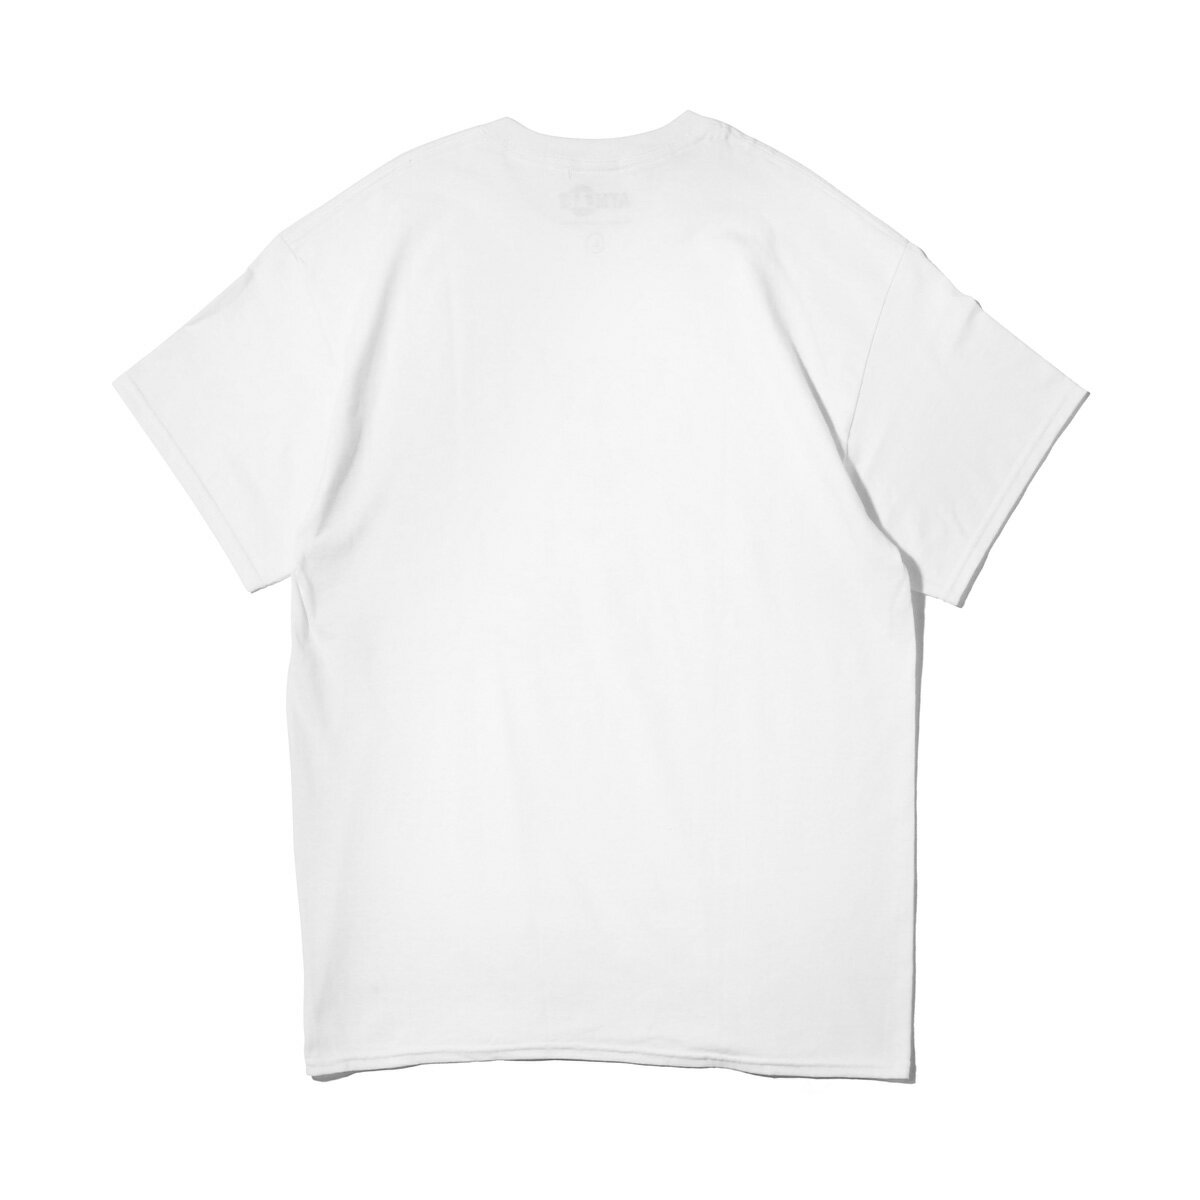 THE SIMPSONS x ATMOS LAB BART TEE (ザシンプソンズ アトモスラボ バート ティ) WHITE【メンズ Tシャツ】18SS-S